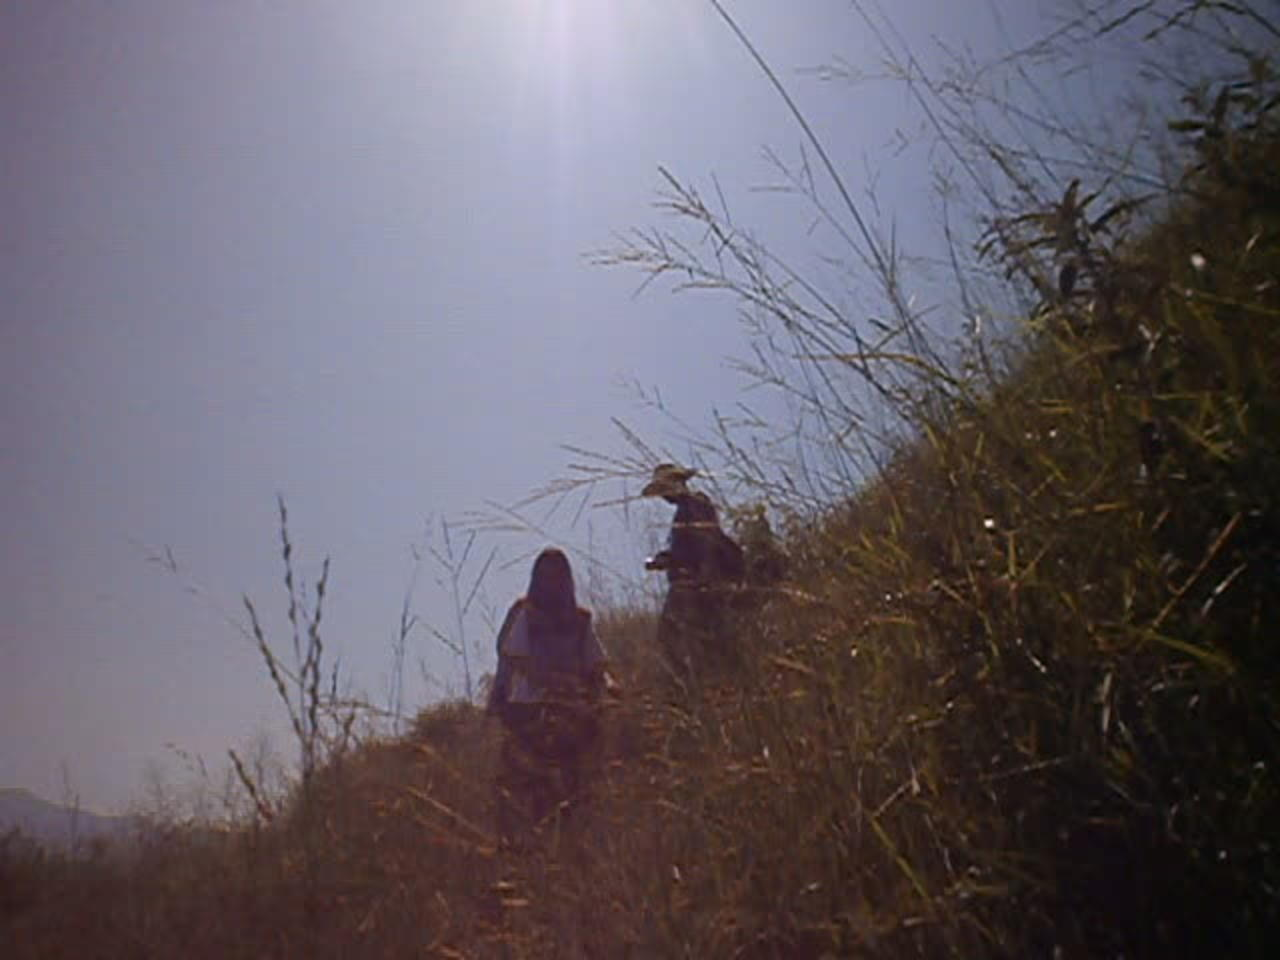 crossing rice field guizhou guanxi border region